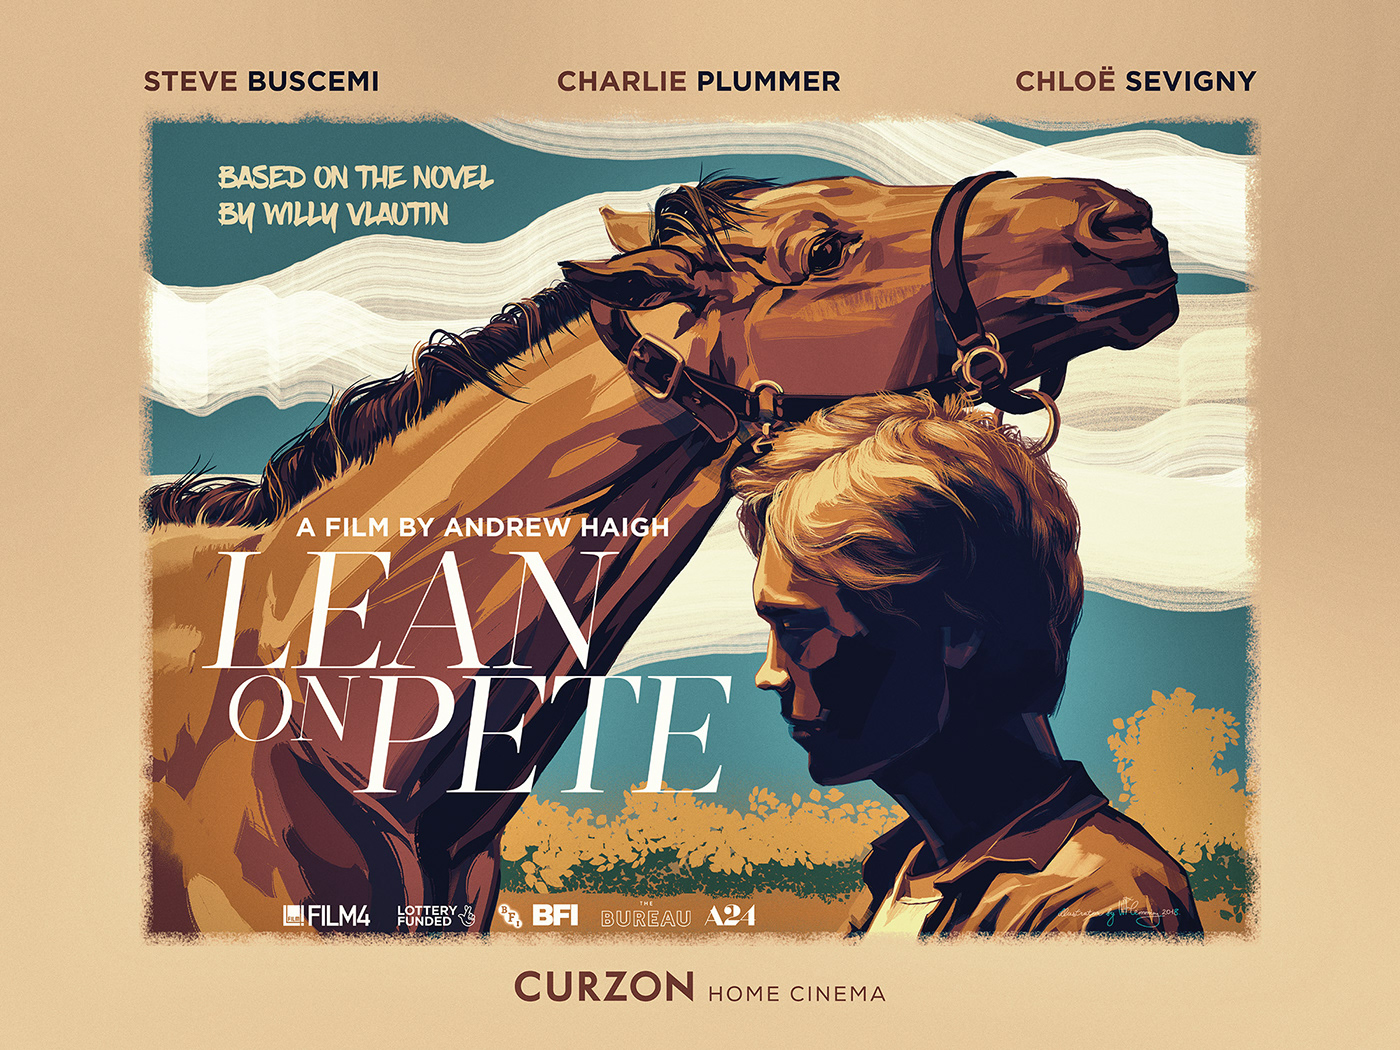 movie poster ILLUSTRATION  W Flemming portrait Andrew Haigh Steve Buscemi chloe sevigny charlie plummer horses Portraiture